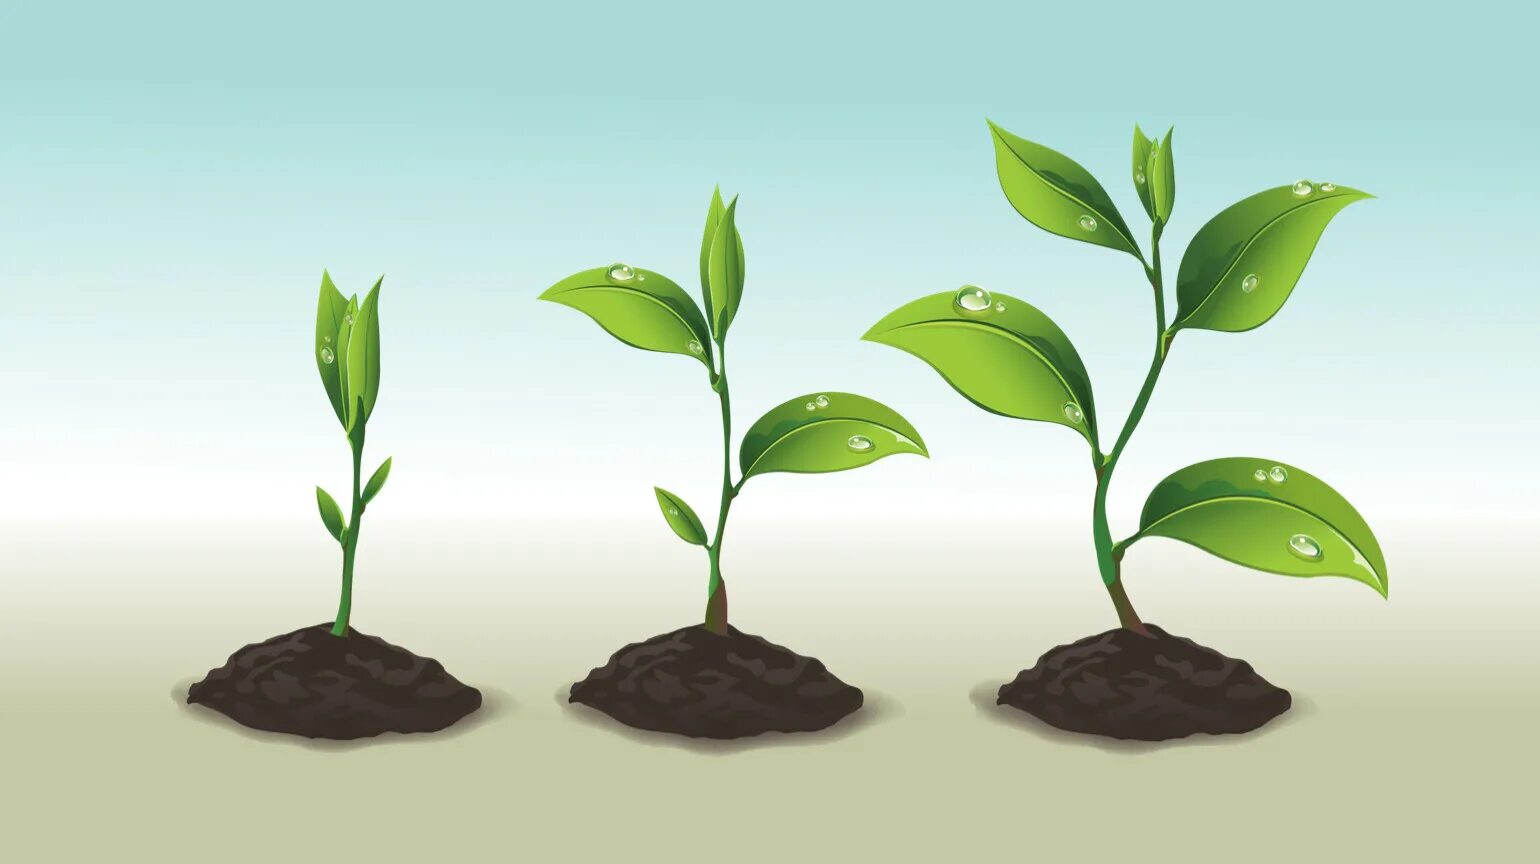 Признаки описывающие рост растения. Рост растений. Процесс роста растений. Рост цветка. Процесс роста цветка.